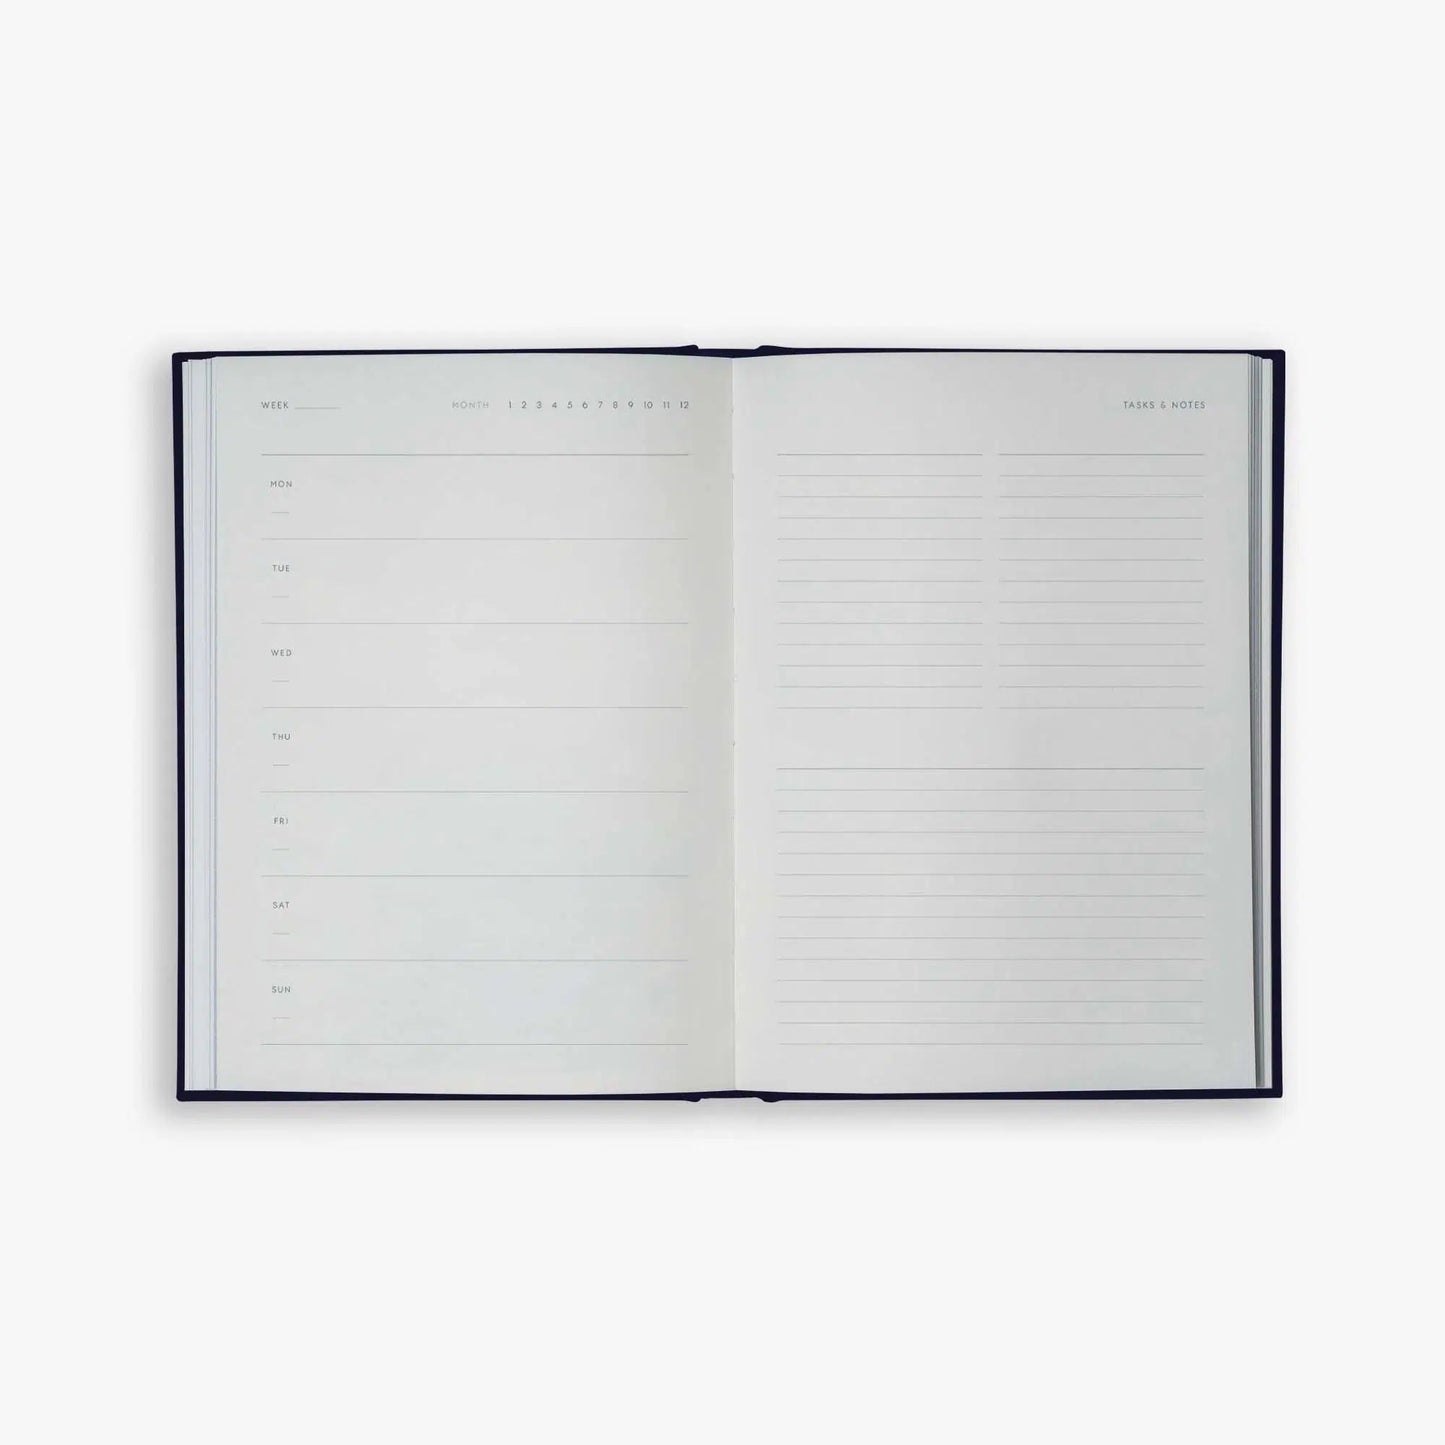 KTK Agenda Perpétuel Yearly Planner Notebook A5-Agenda-Kartotek-Bleu-Papeterie du Dôme